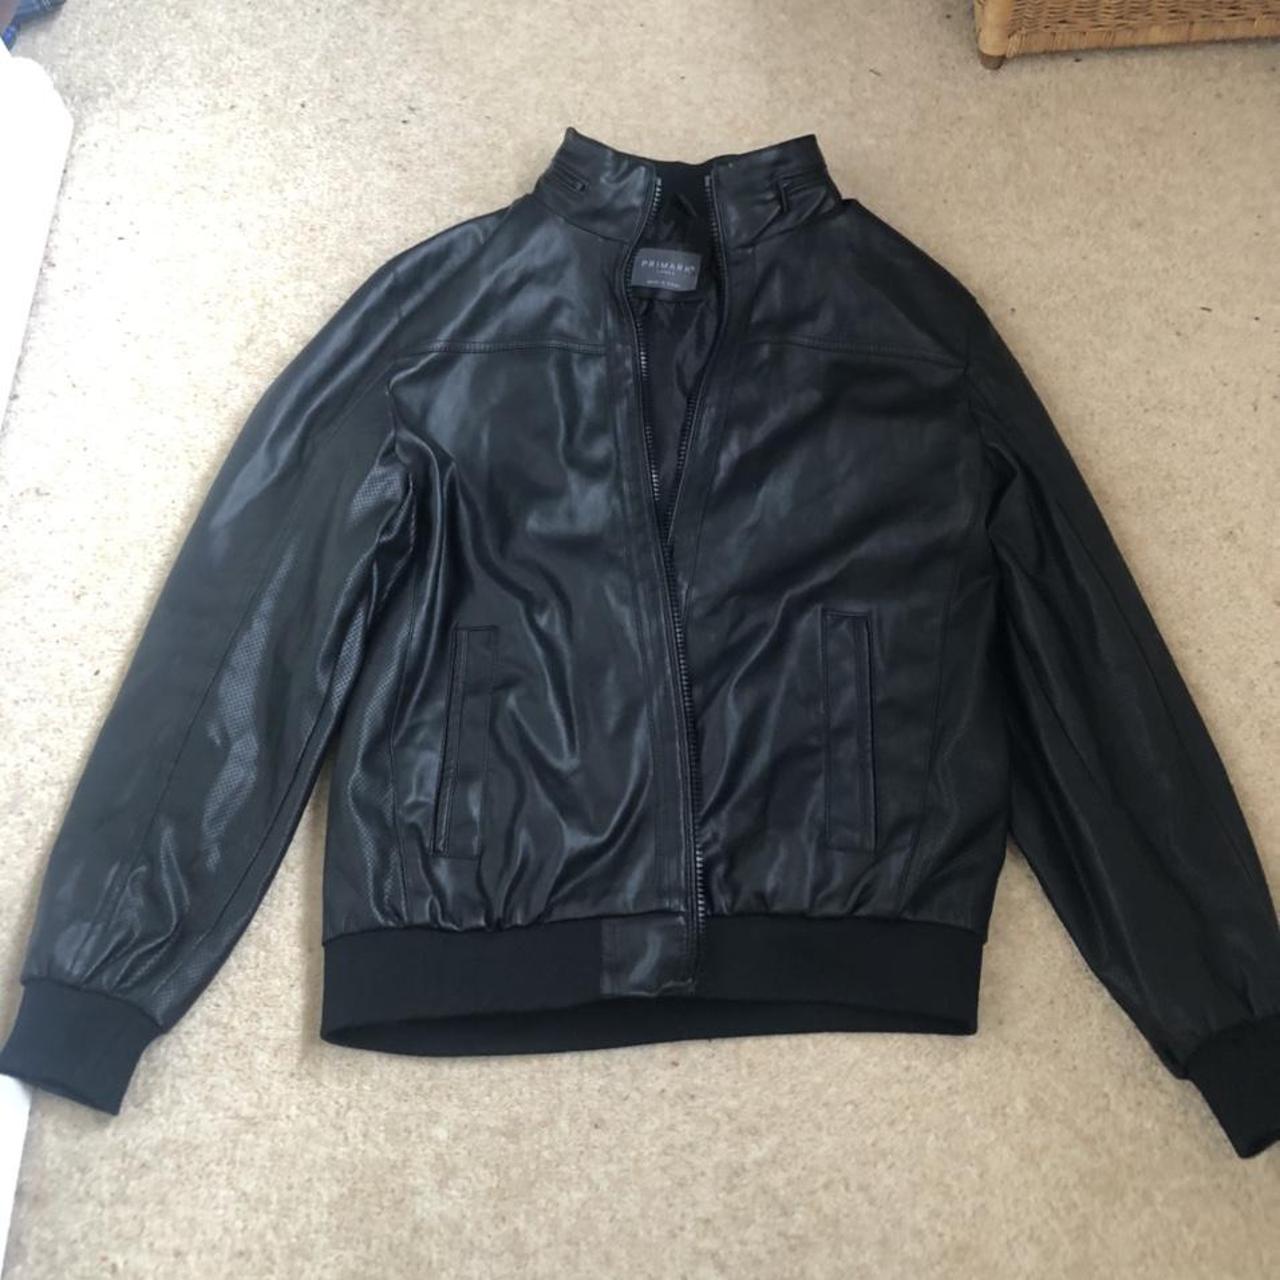 Black primark leather jacket size large. Barely... - Depop